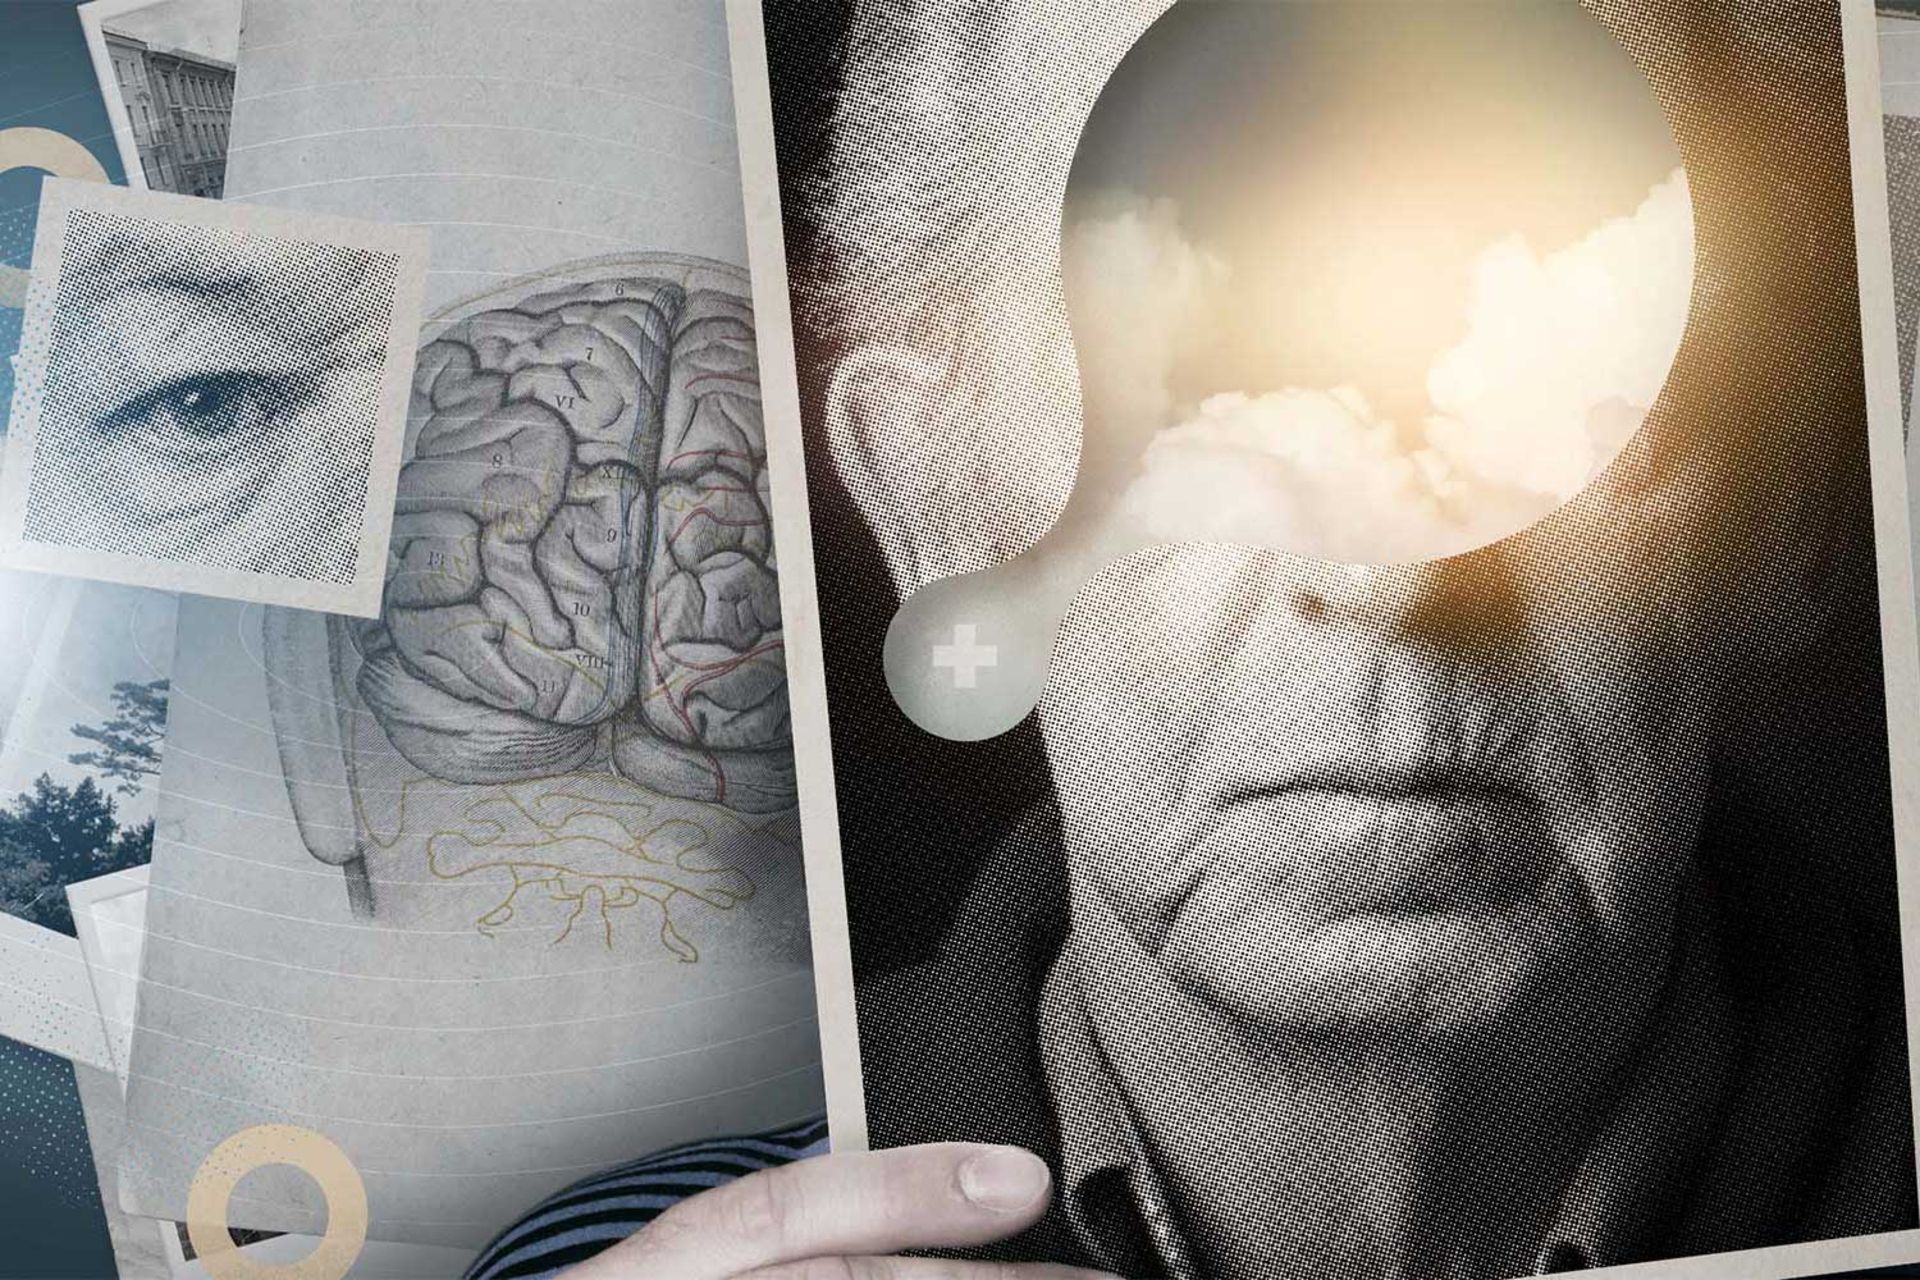 کلاژهایی از چهره مرد مسن مبتلا به آلزایمر، مغز و چشم انسان